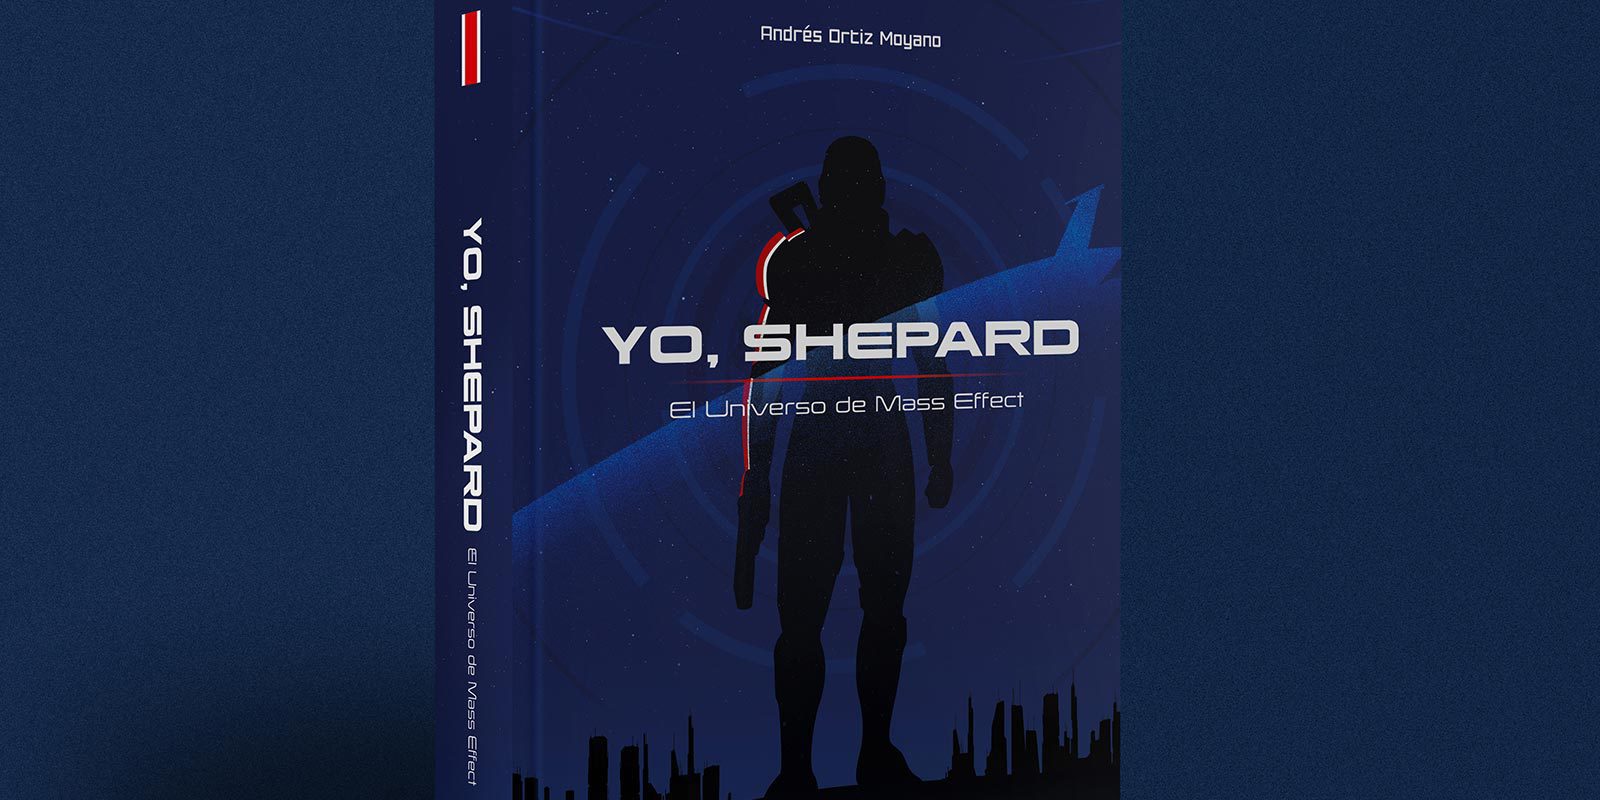 Héroes de Papel anuncia la fecha de lanzamiento de 'Yo, Shepard' su libro sobre 'Mass Effect'